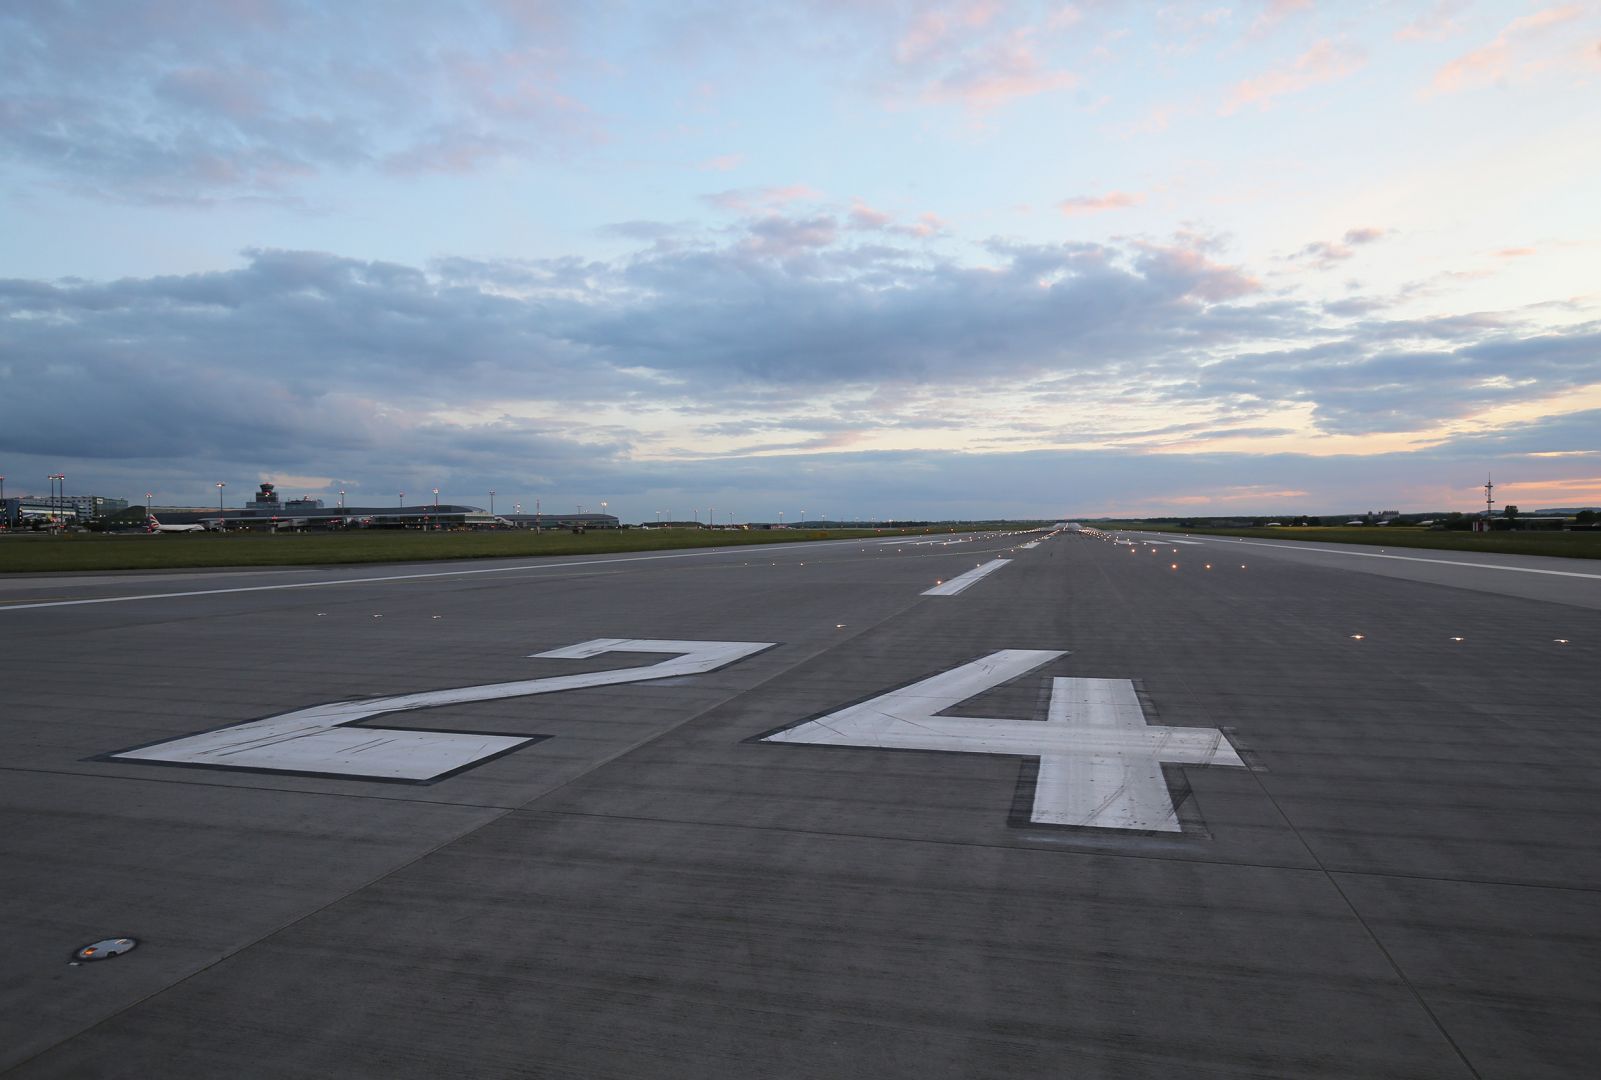 Prague Airport runway